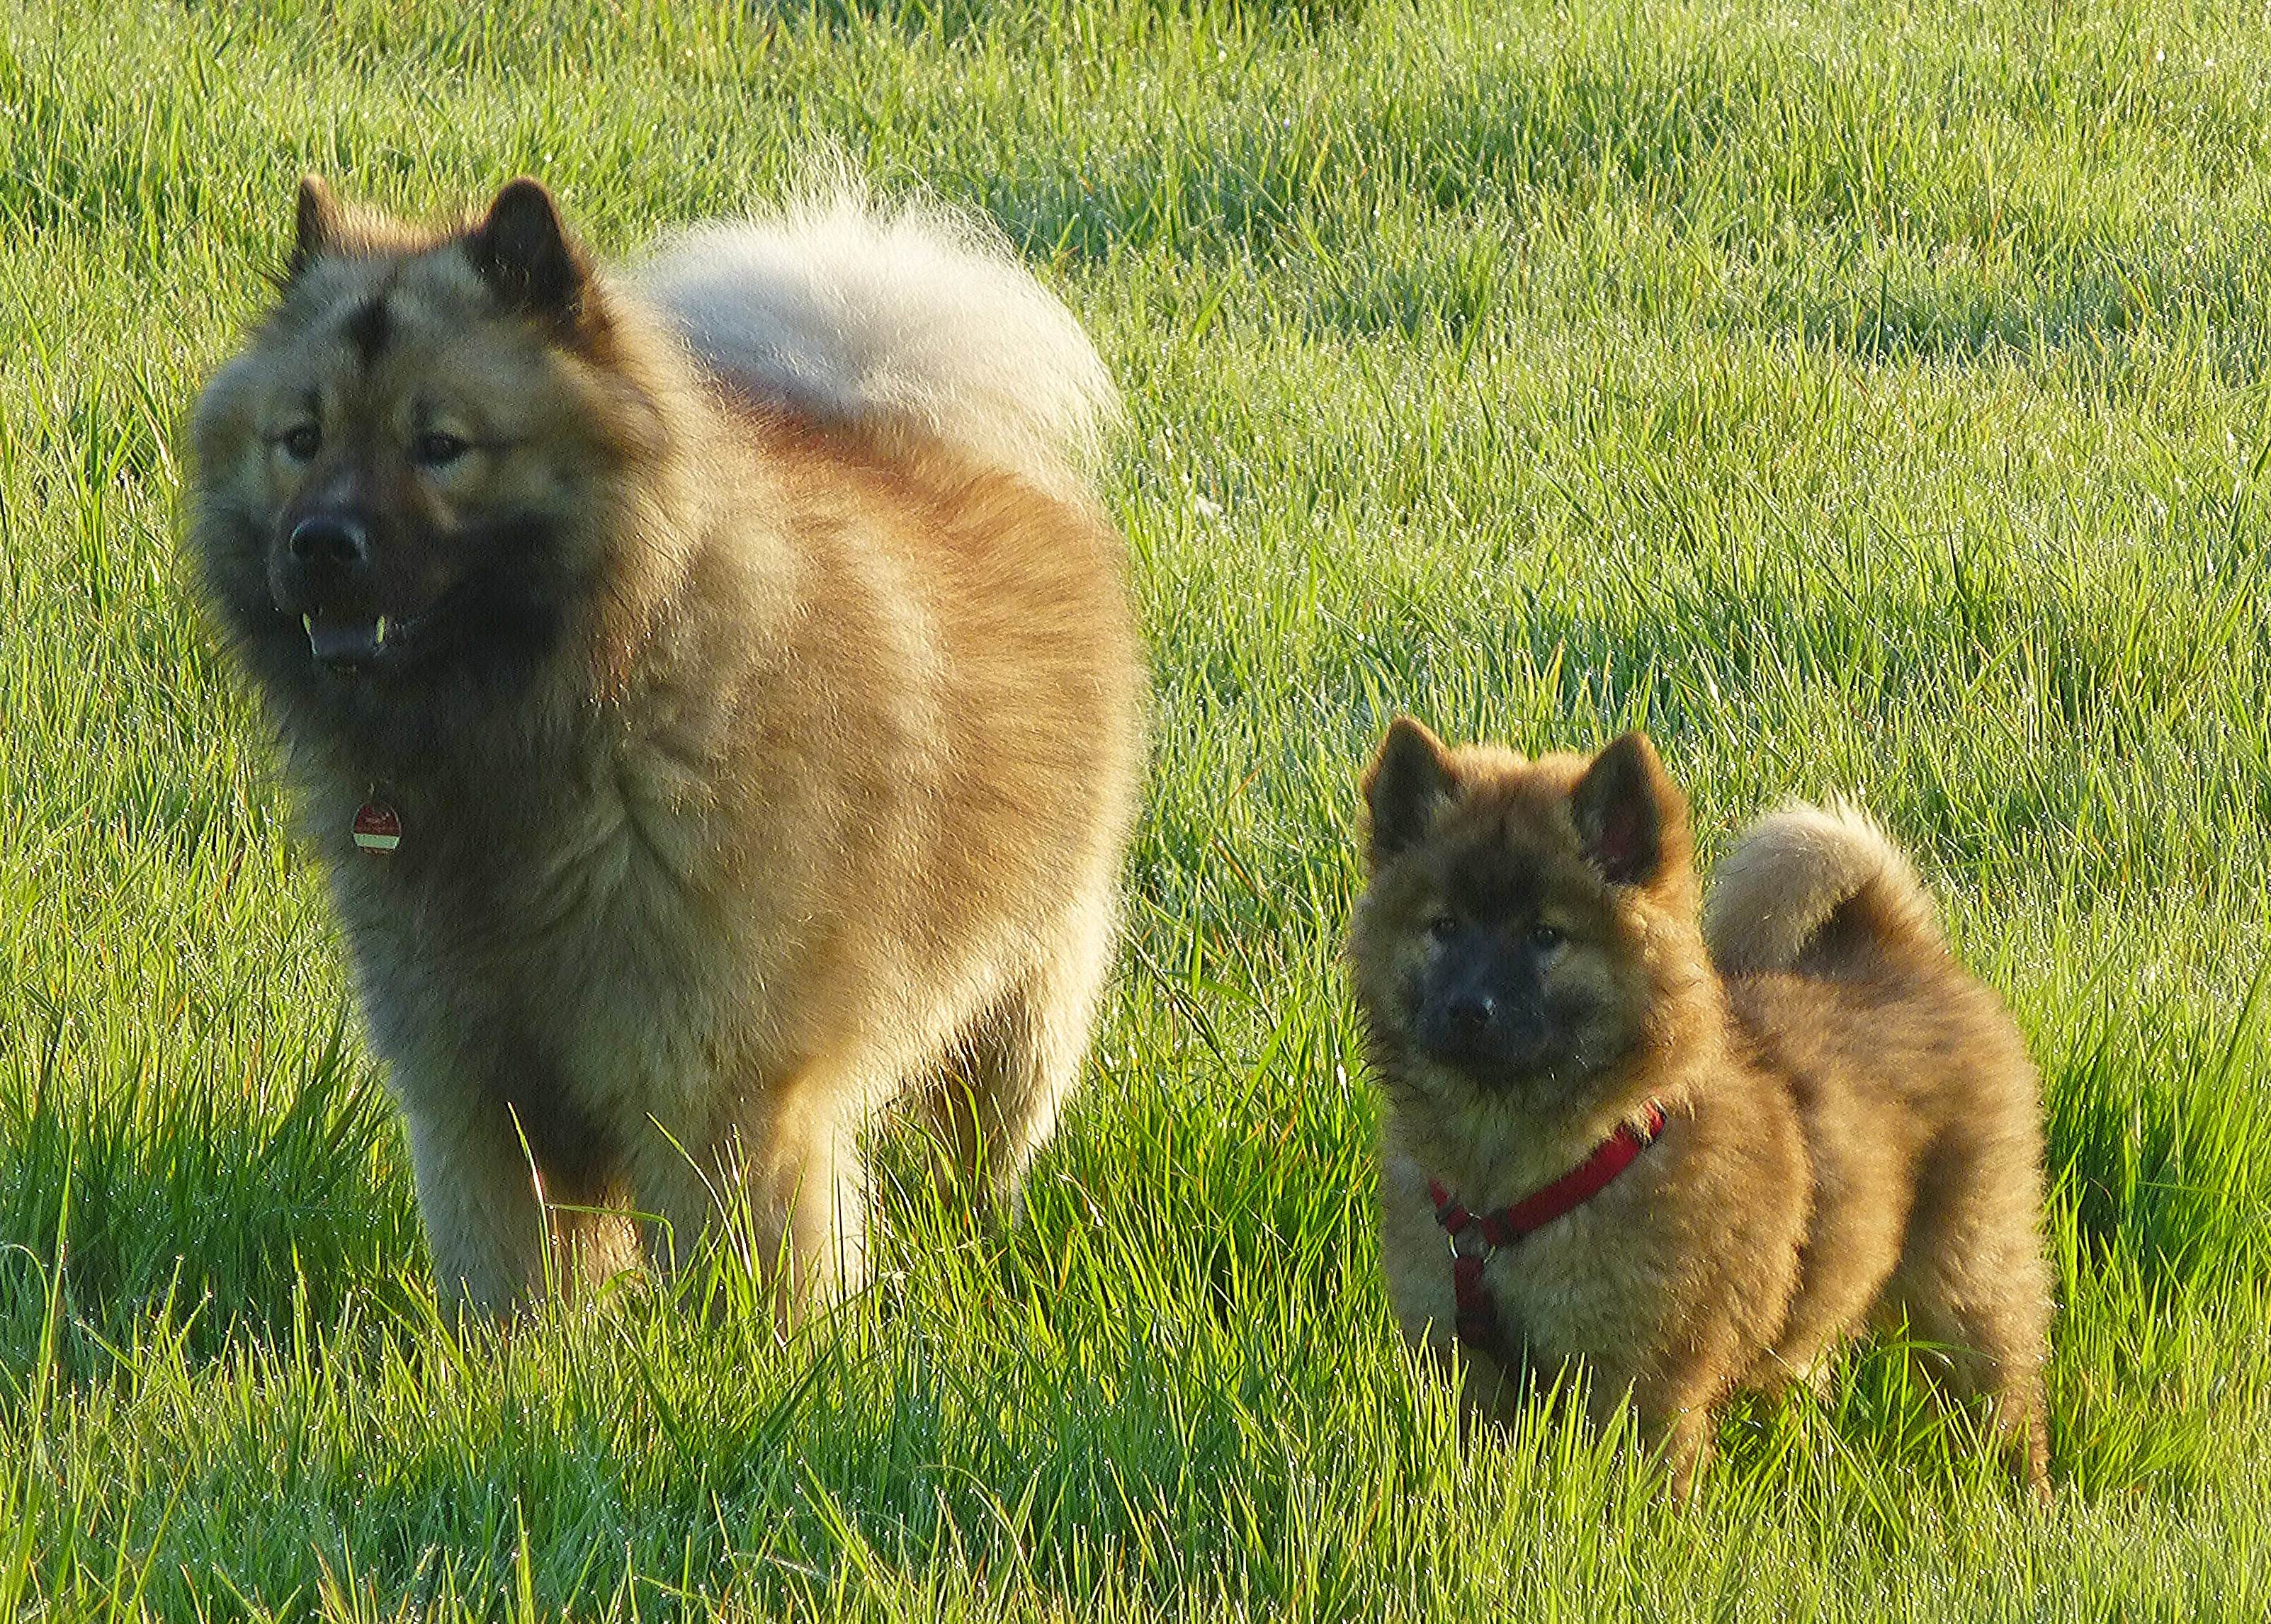 Евразиер (евразийская собака, ойразиер): описание породы с фото и видео